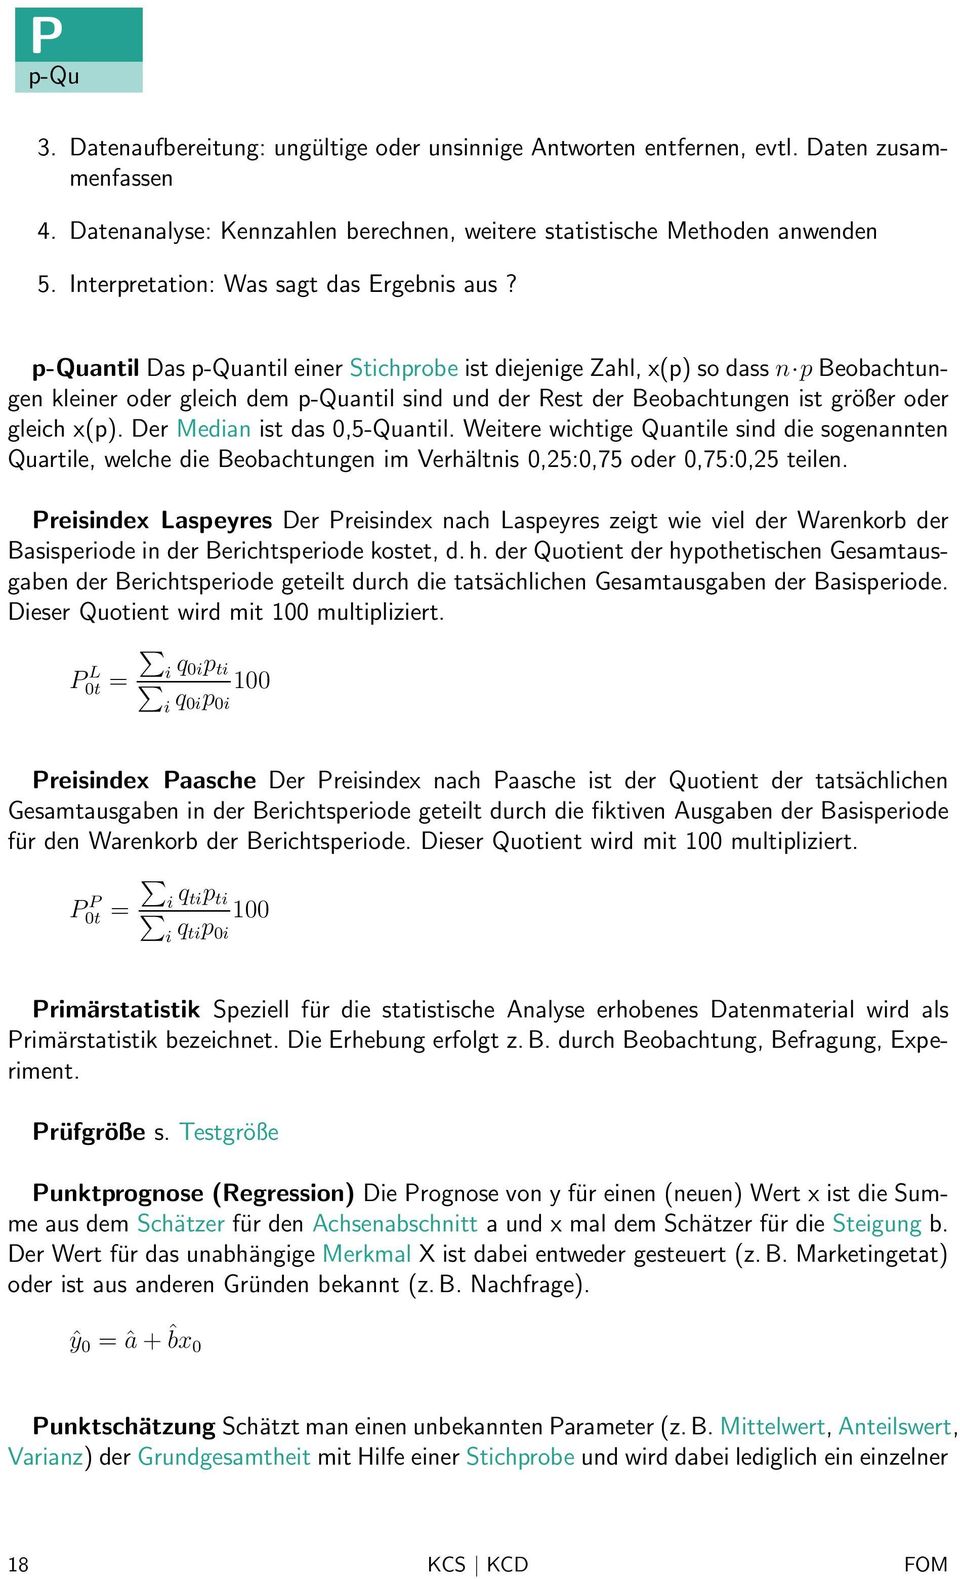 p-quantil Das p-quantil einer Stichprobe ist diejenige Zahl, x(p) so dass n p Beobachtungen kleiner oder gleich dem p-quantil sind und der Rest der Beobachtungen ist größer oder gleich x(p).